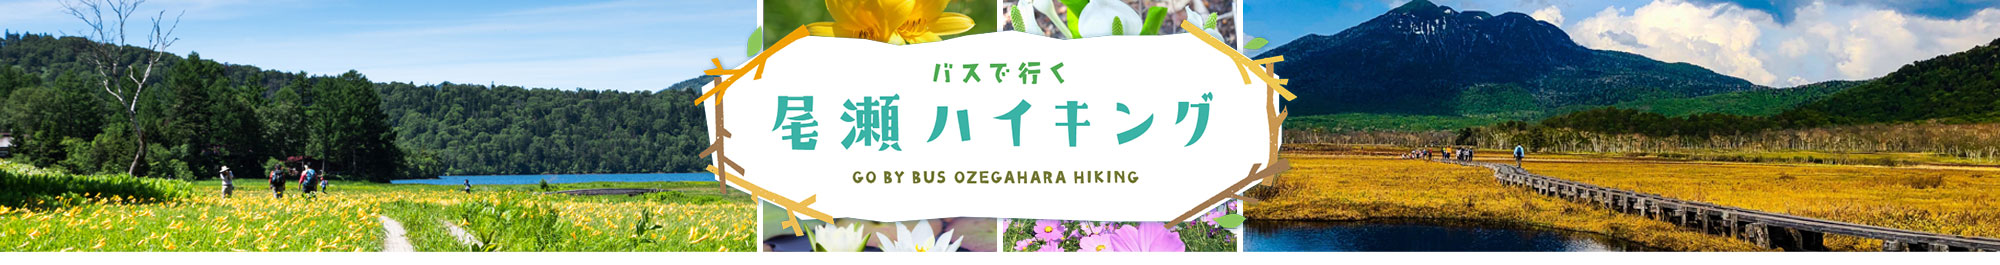 バスで行く 尾瀬ハイキング - GO BY BUS OZEGAHARA HILING